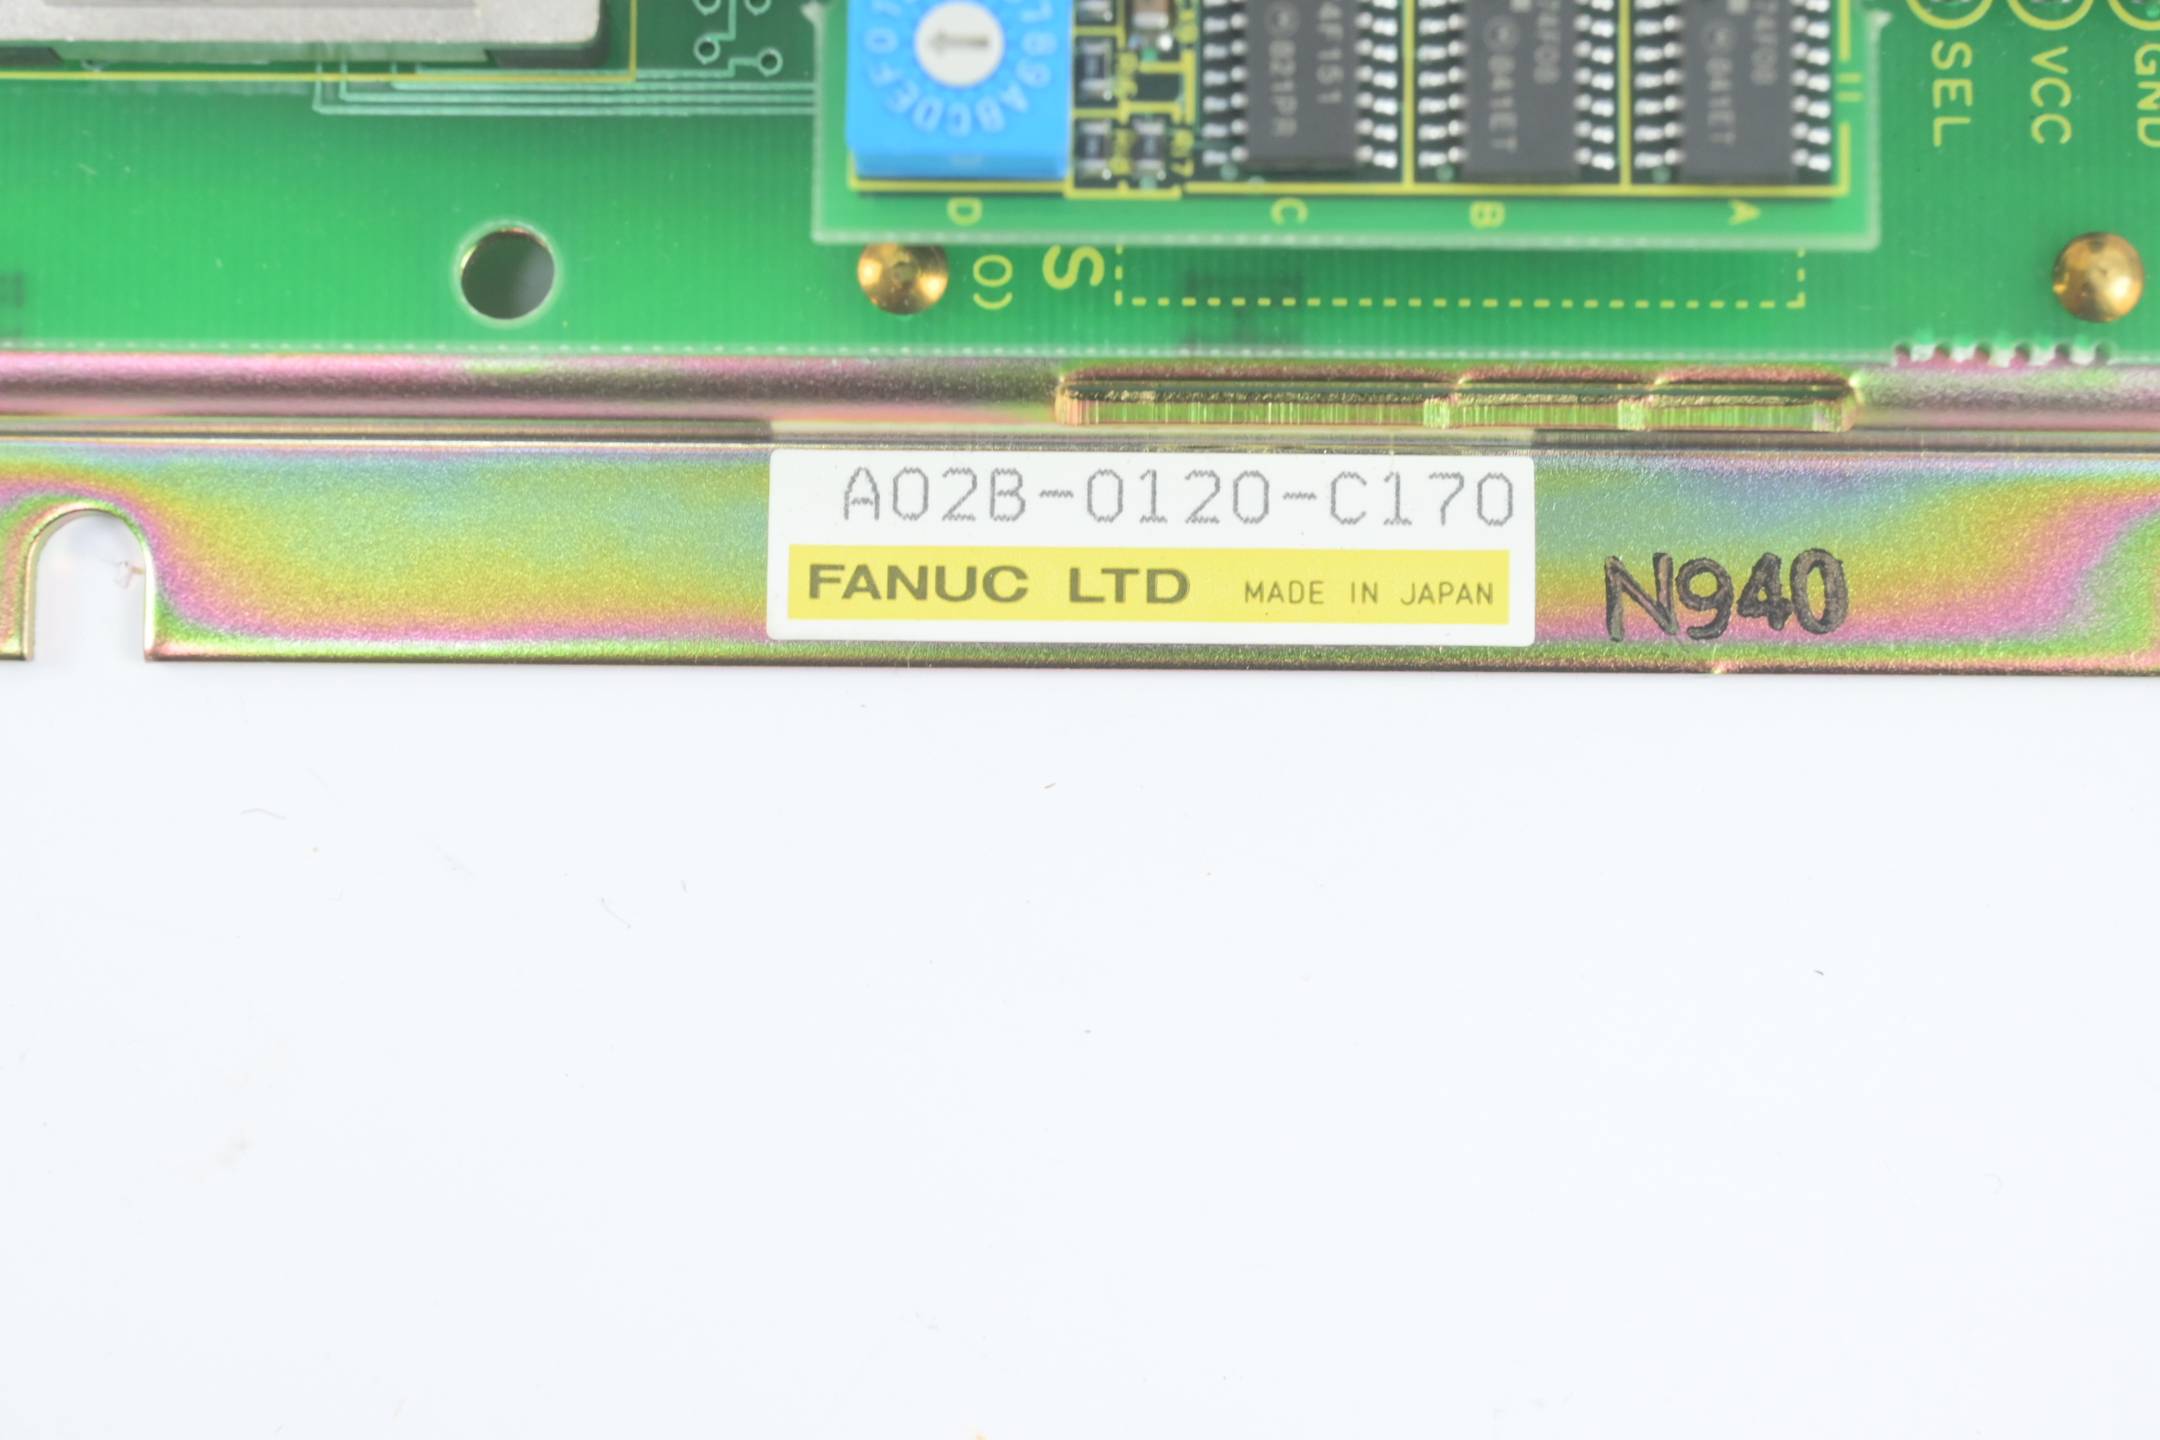 Fanuc Board A02B-0120-C170 